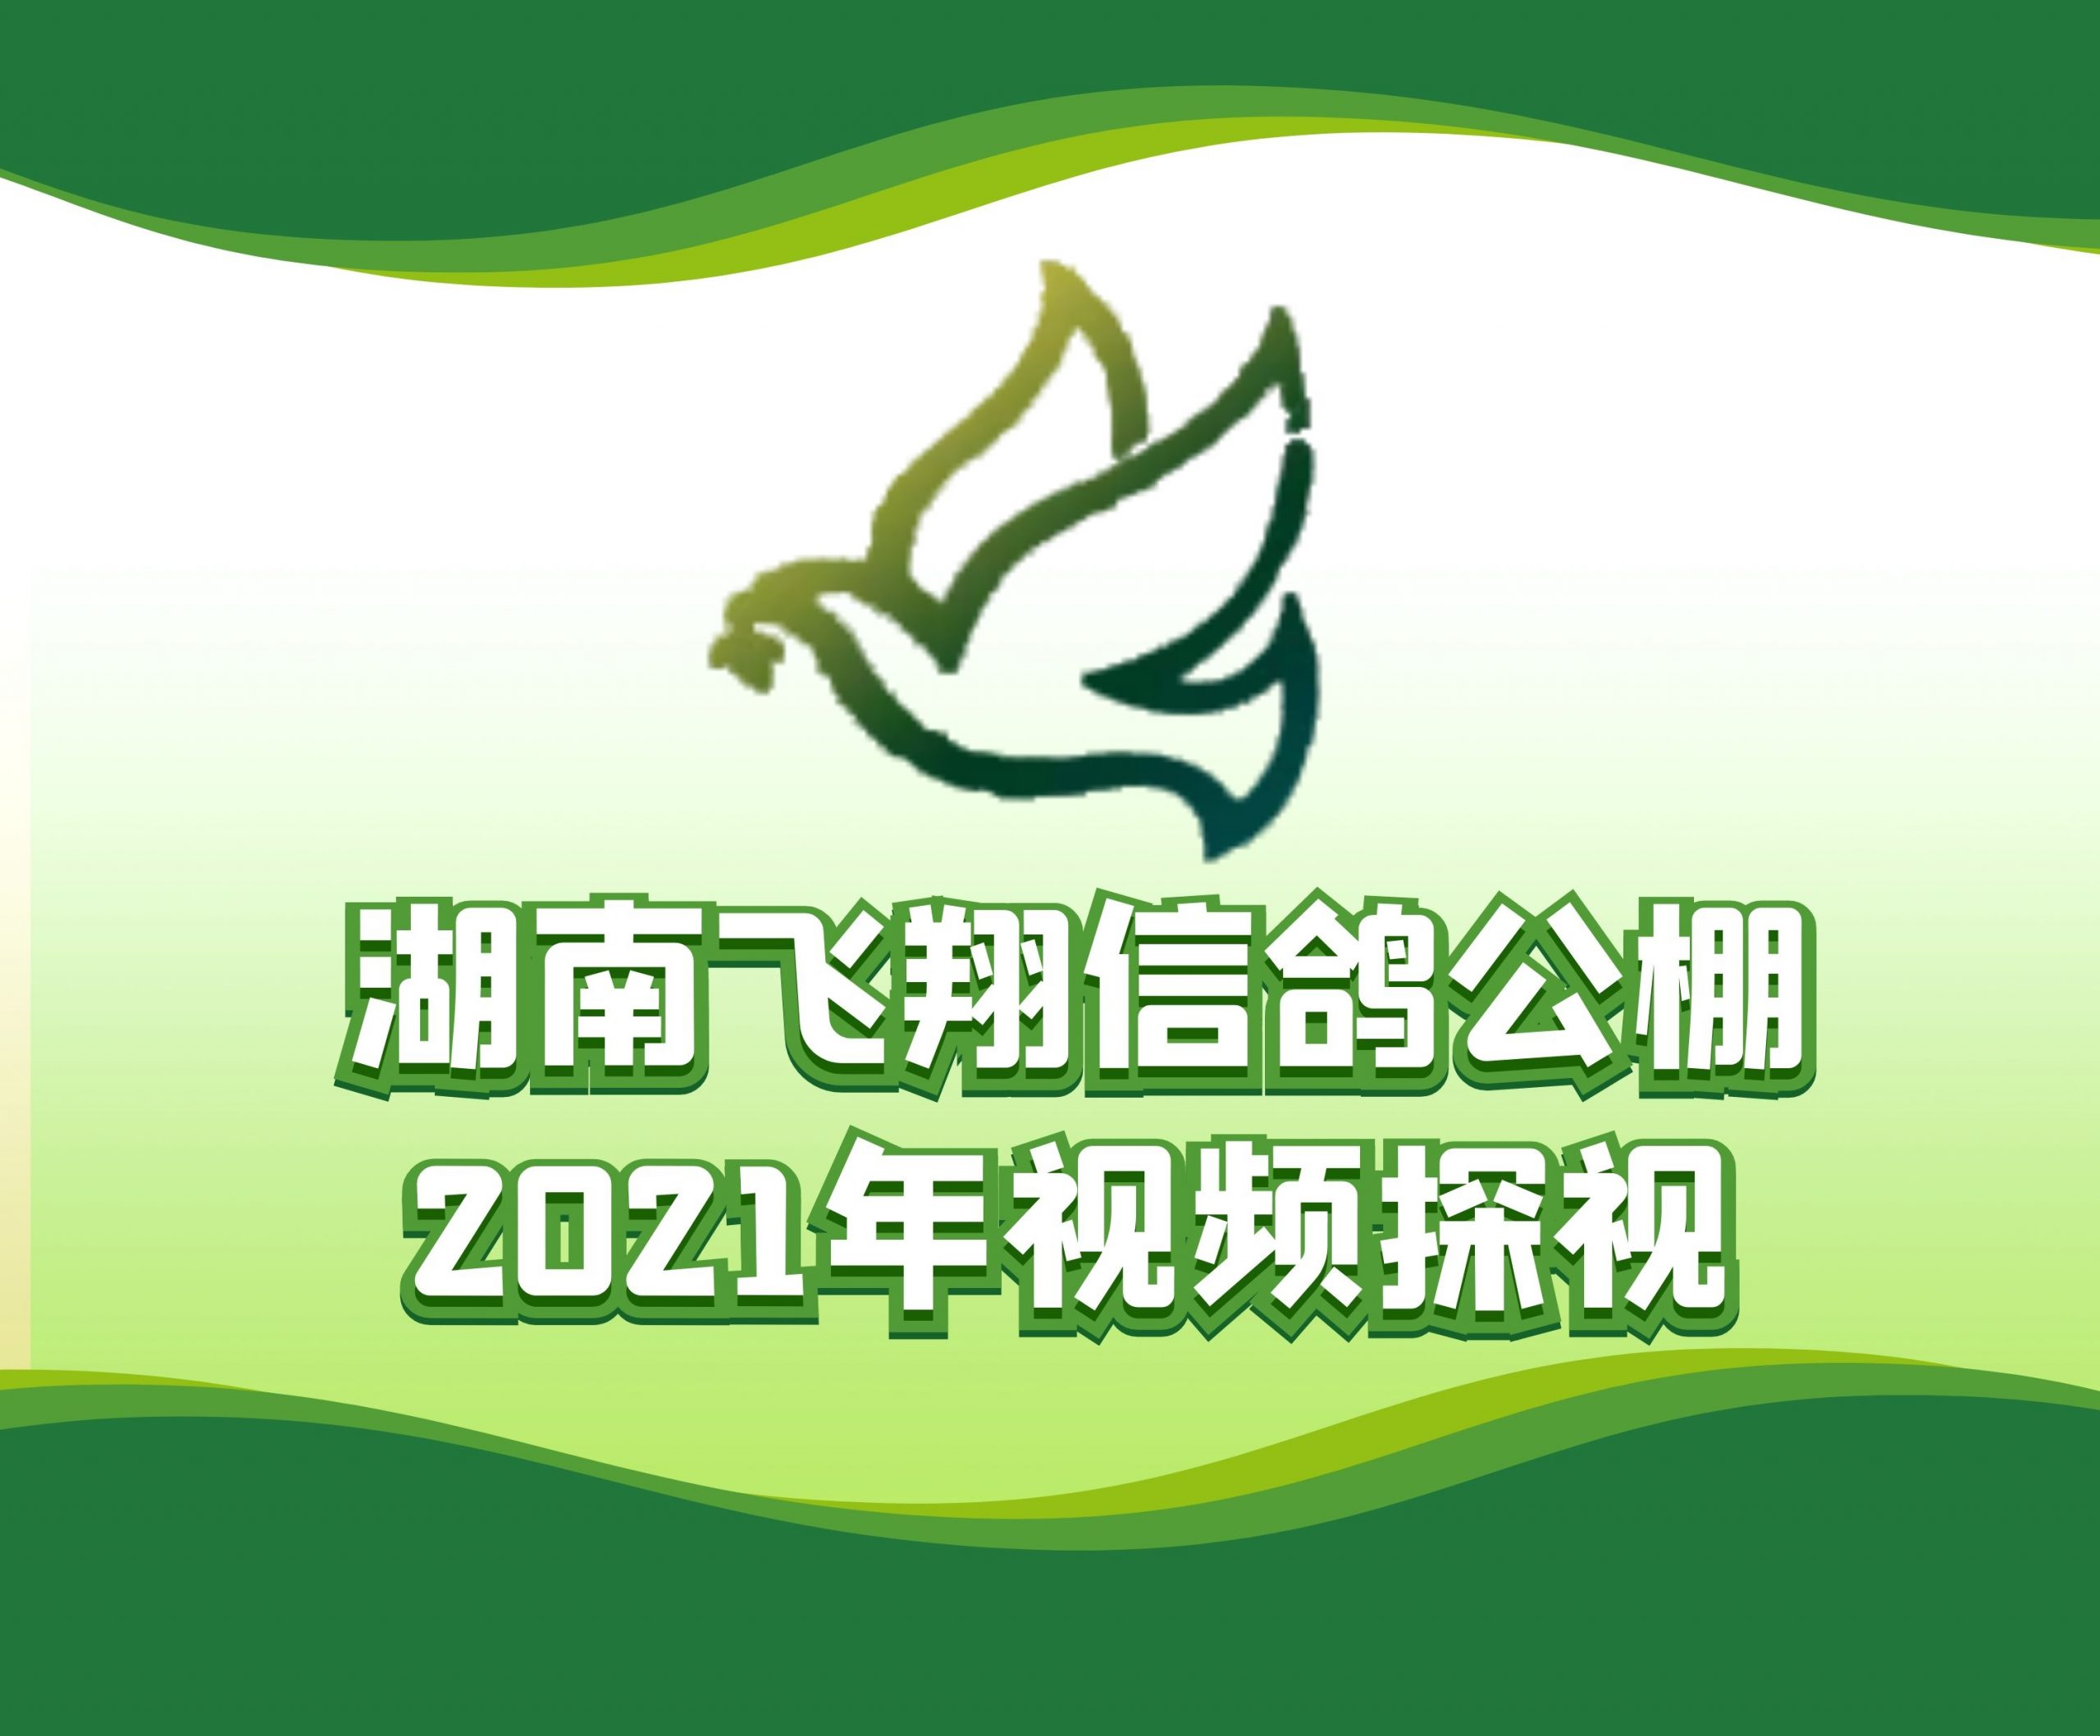 龙城赛鸽俱乐部+龙再飞-2021-16-0030012